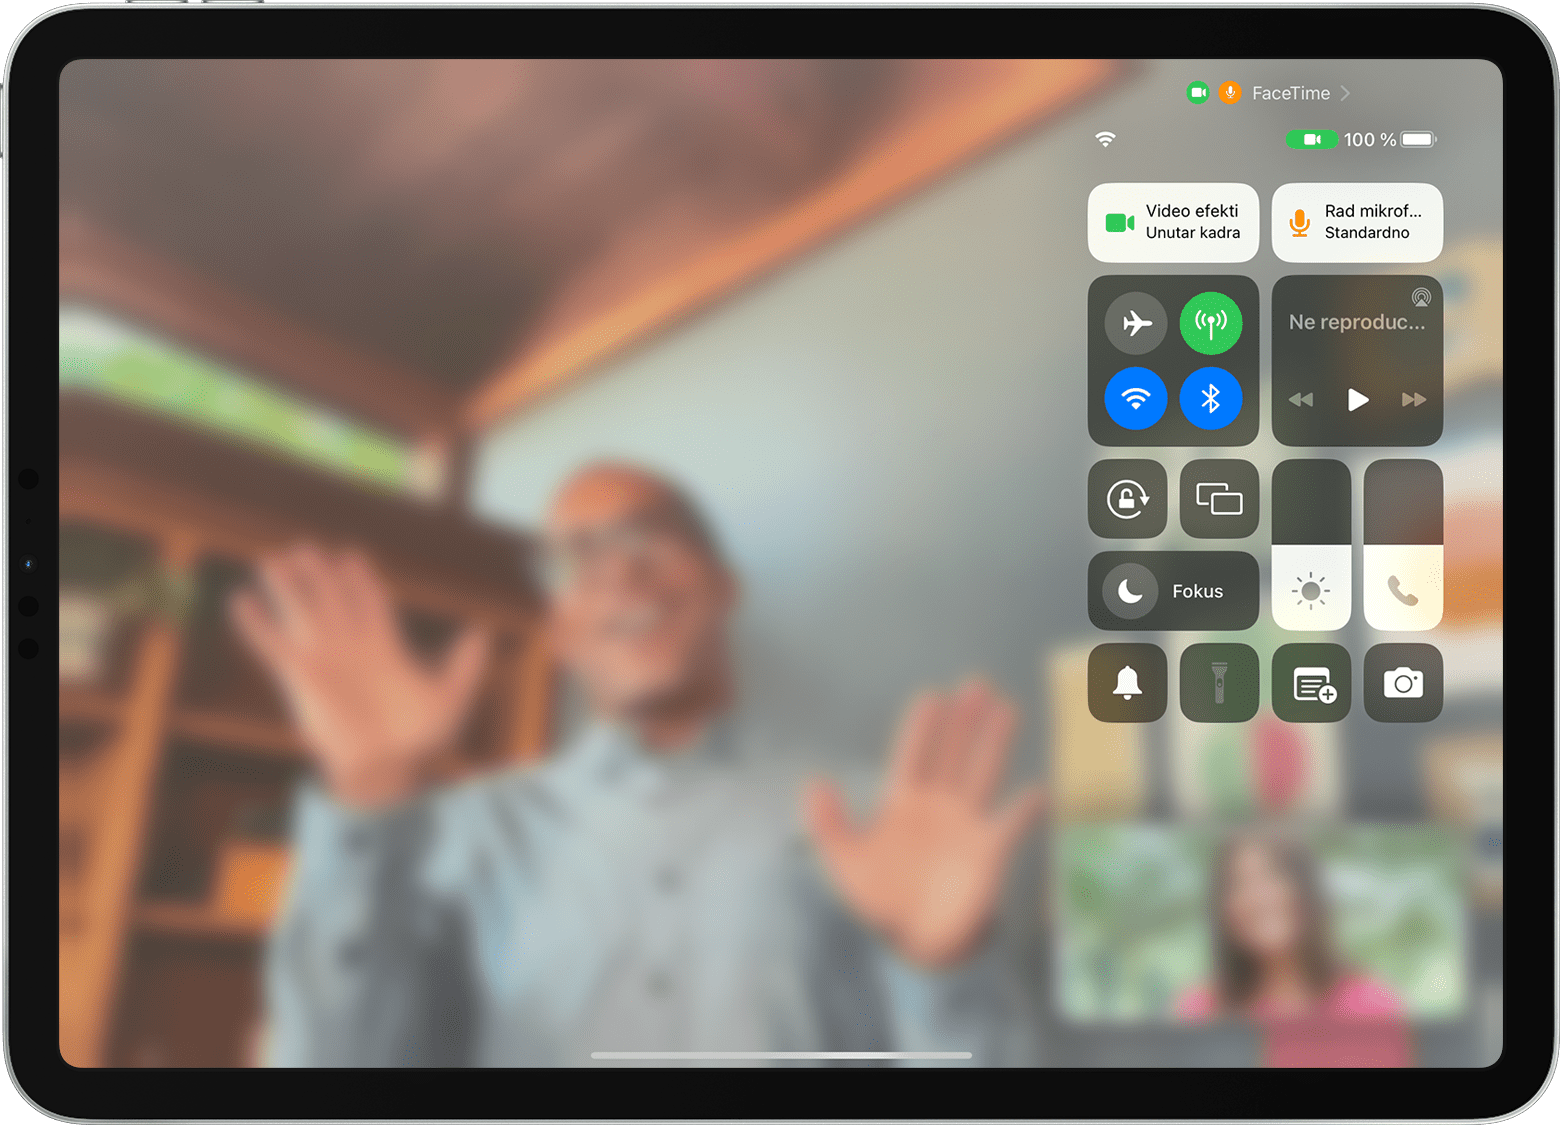 Zaslon iPad uređaja s prikazom poziva u aplikaciji FaceTime i s vidljivim Kontrolnim centrom, uključujući tipku Video efekti